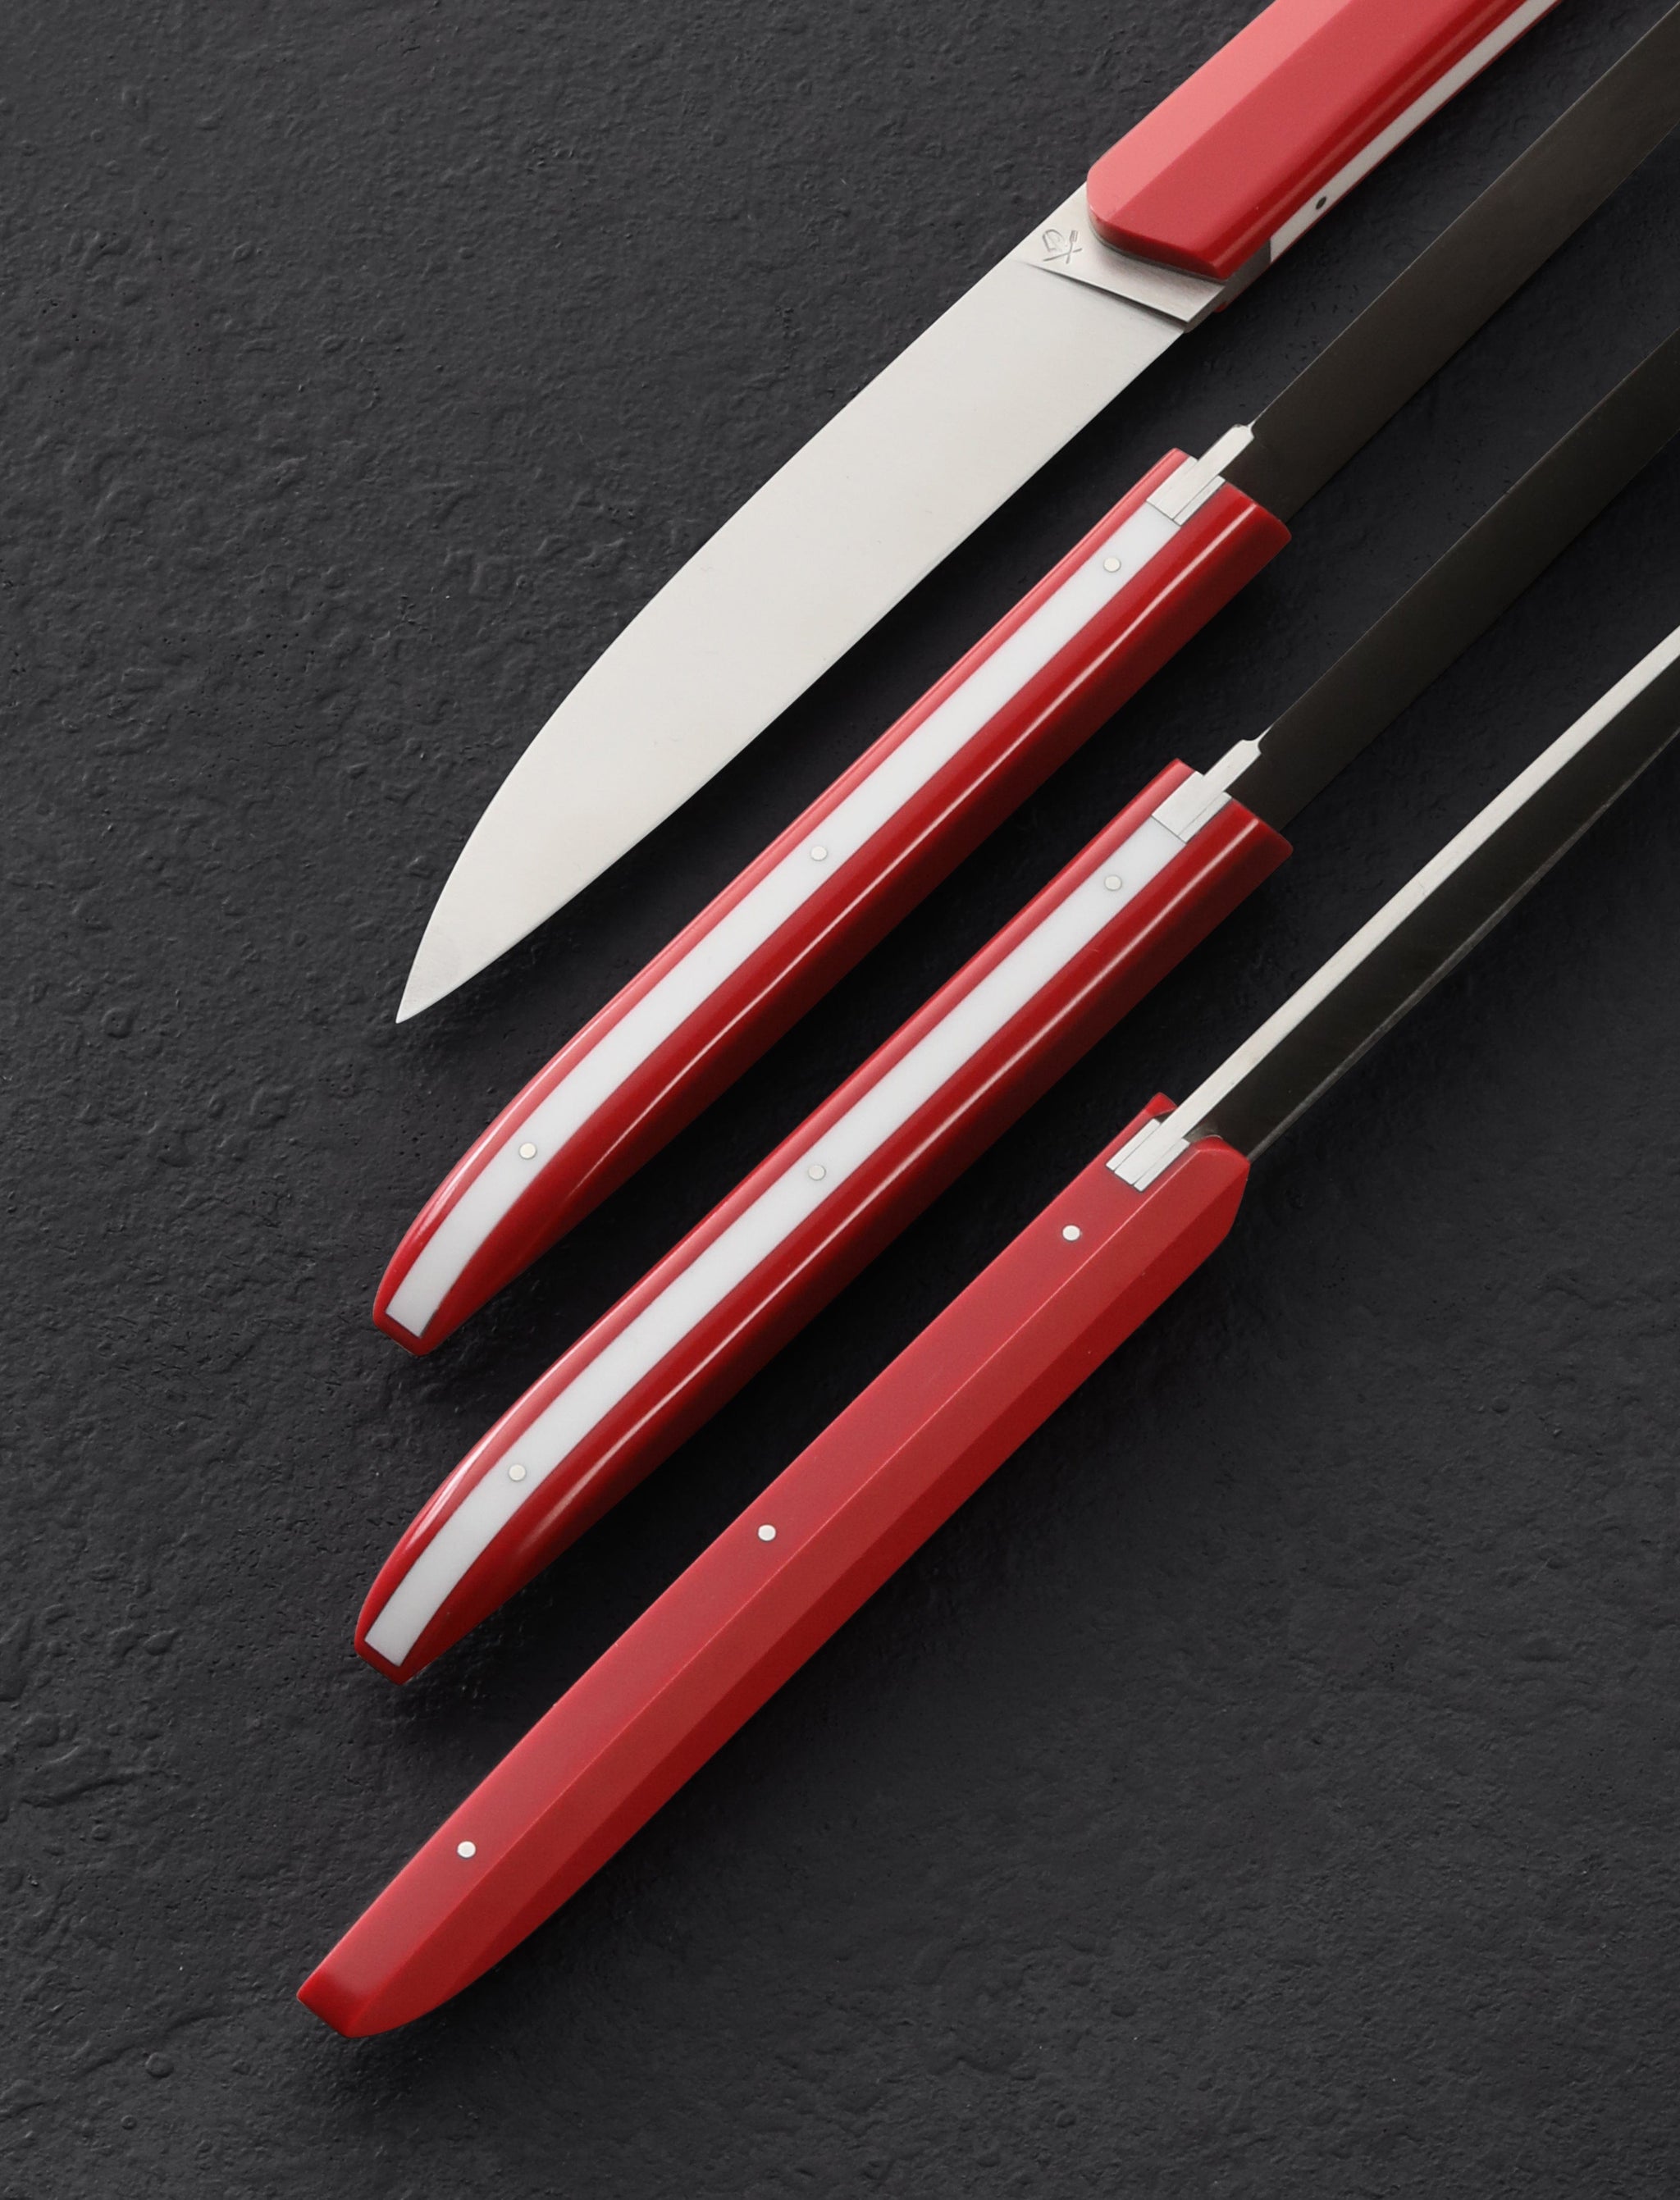 Roland Lannier - France Table Knives Royal Red Steak Knife Set